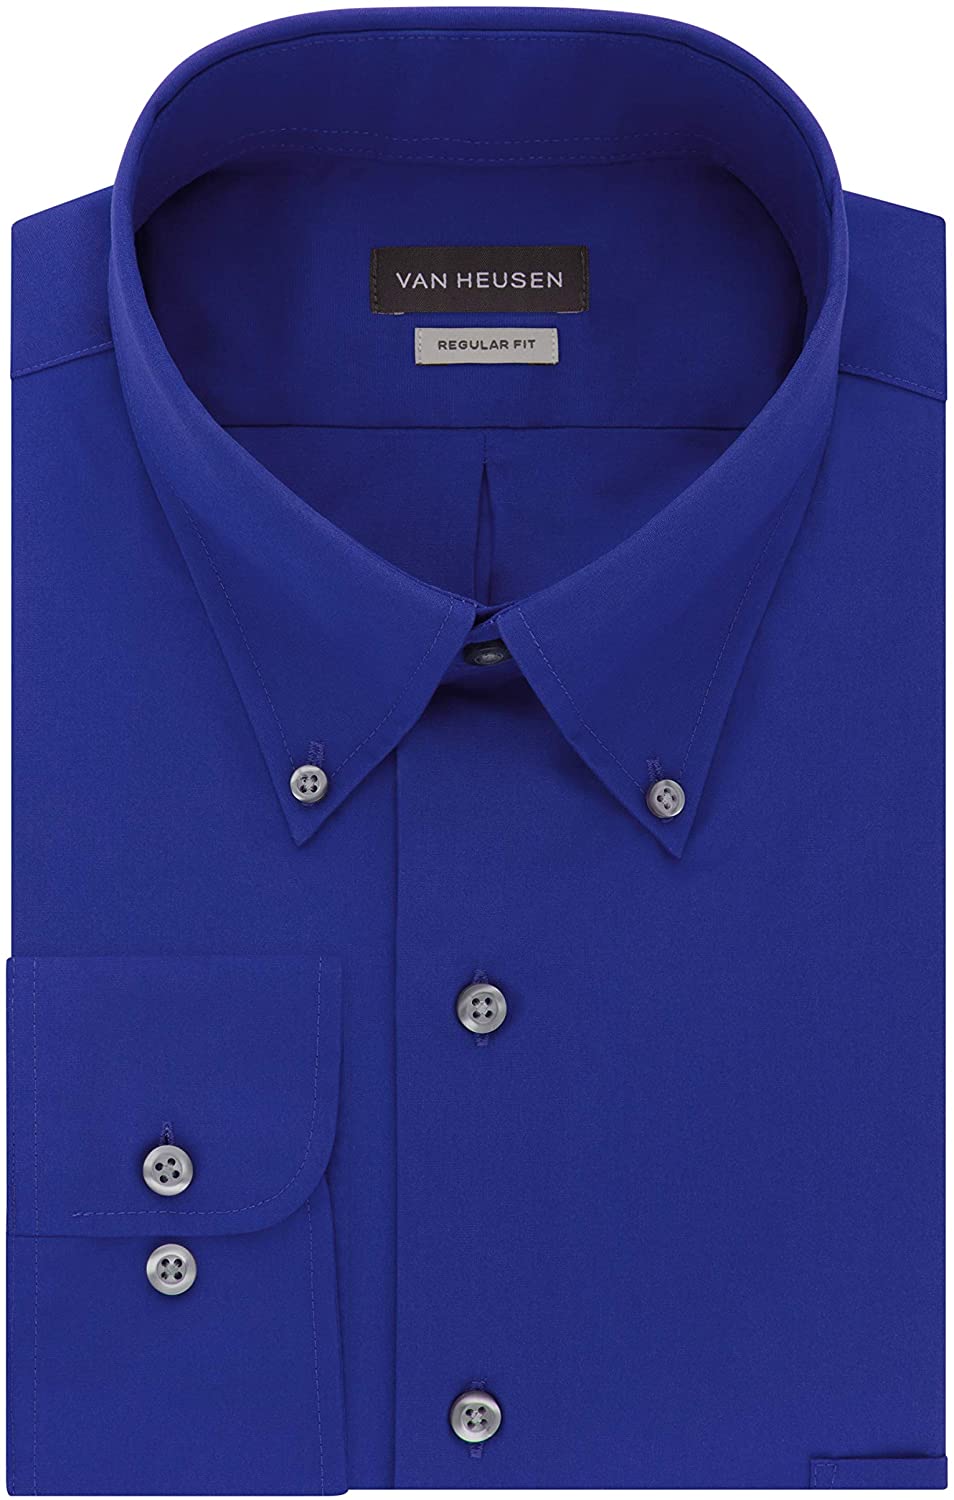 Van Heusen Men's Dress Shirts Regular Fit Silky Poplin Solid | eBay